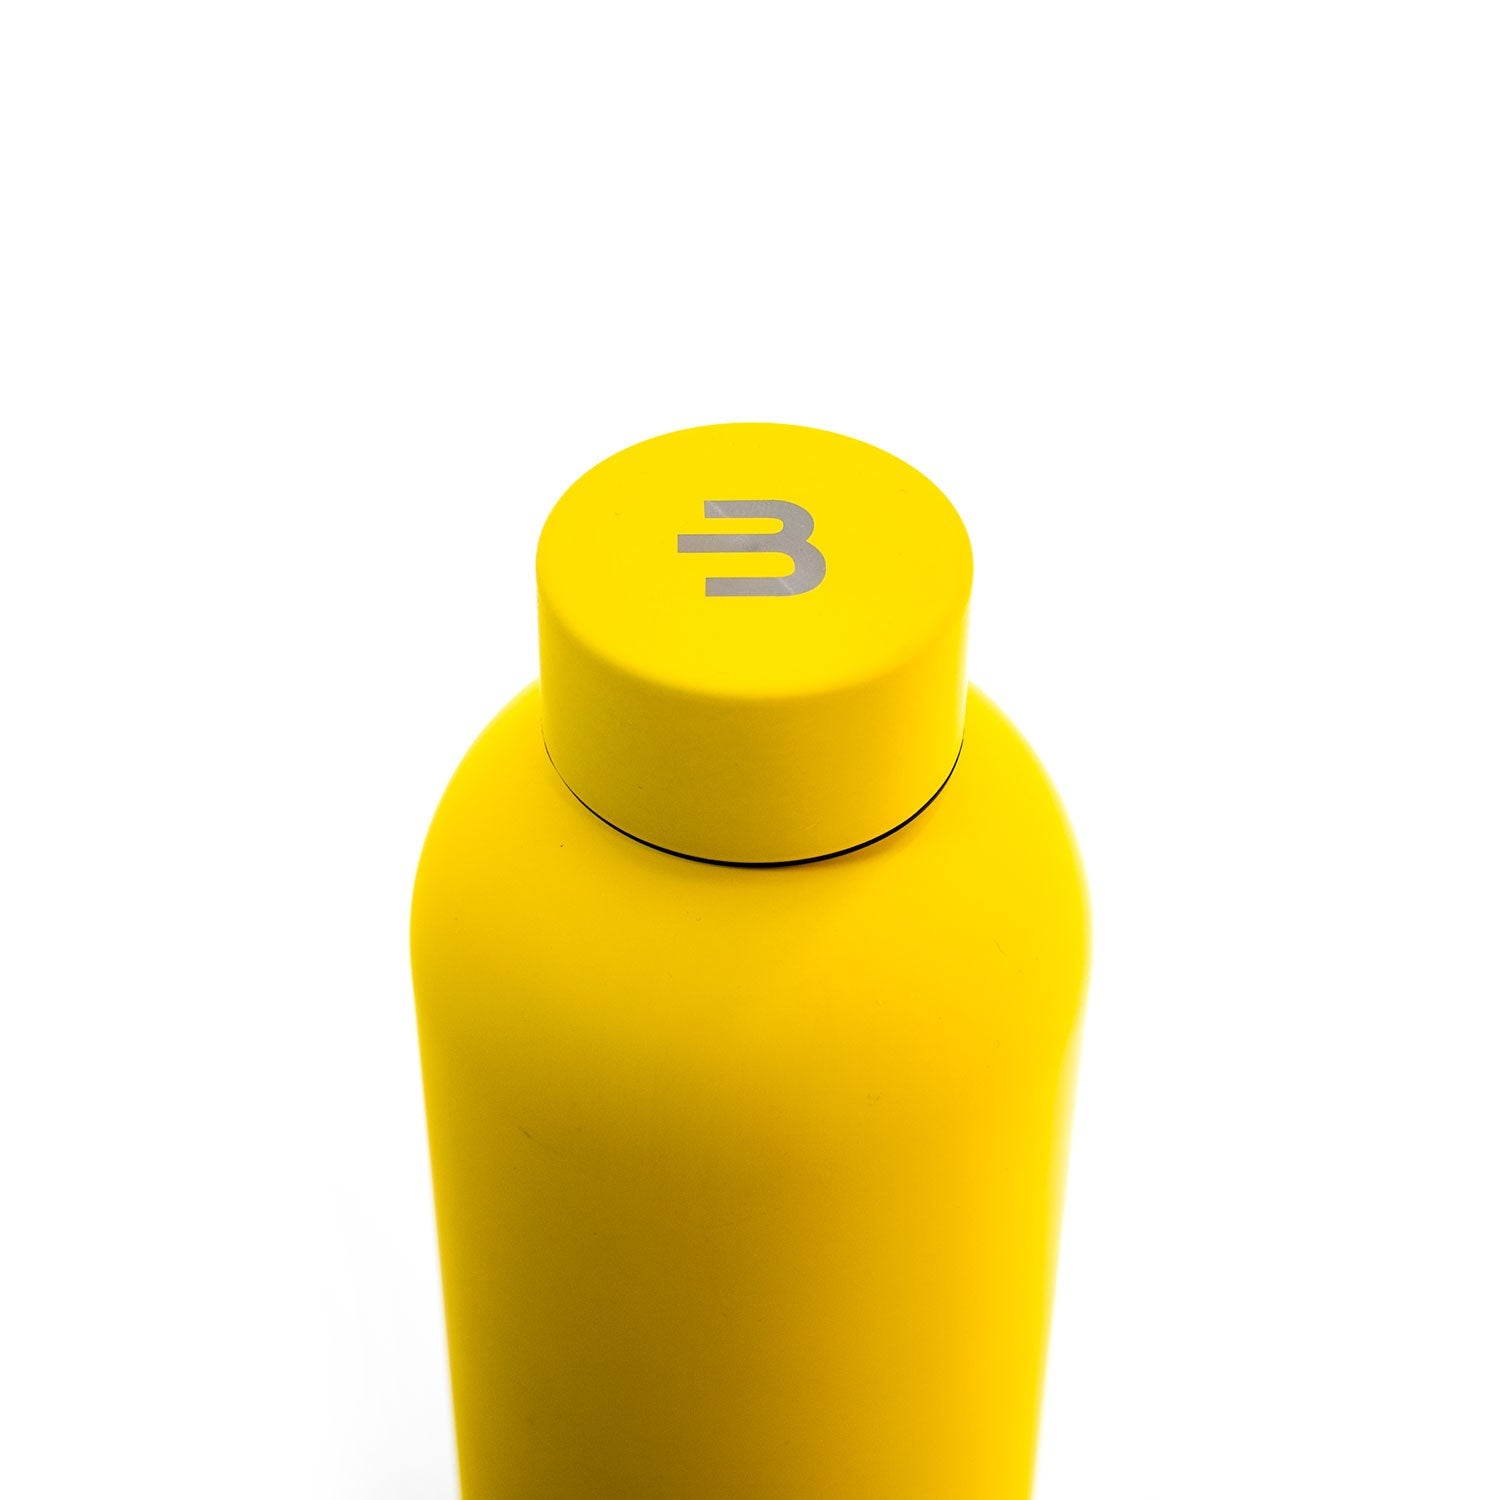 Classiq Sunny bottle - 500 ml - BeLoco